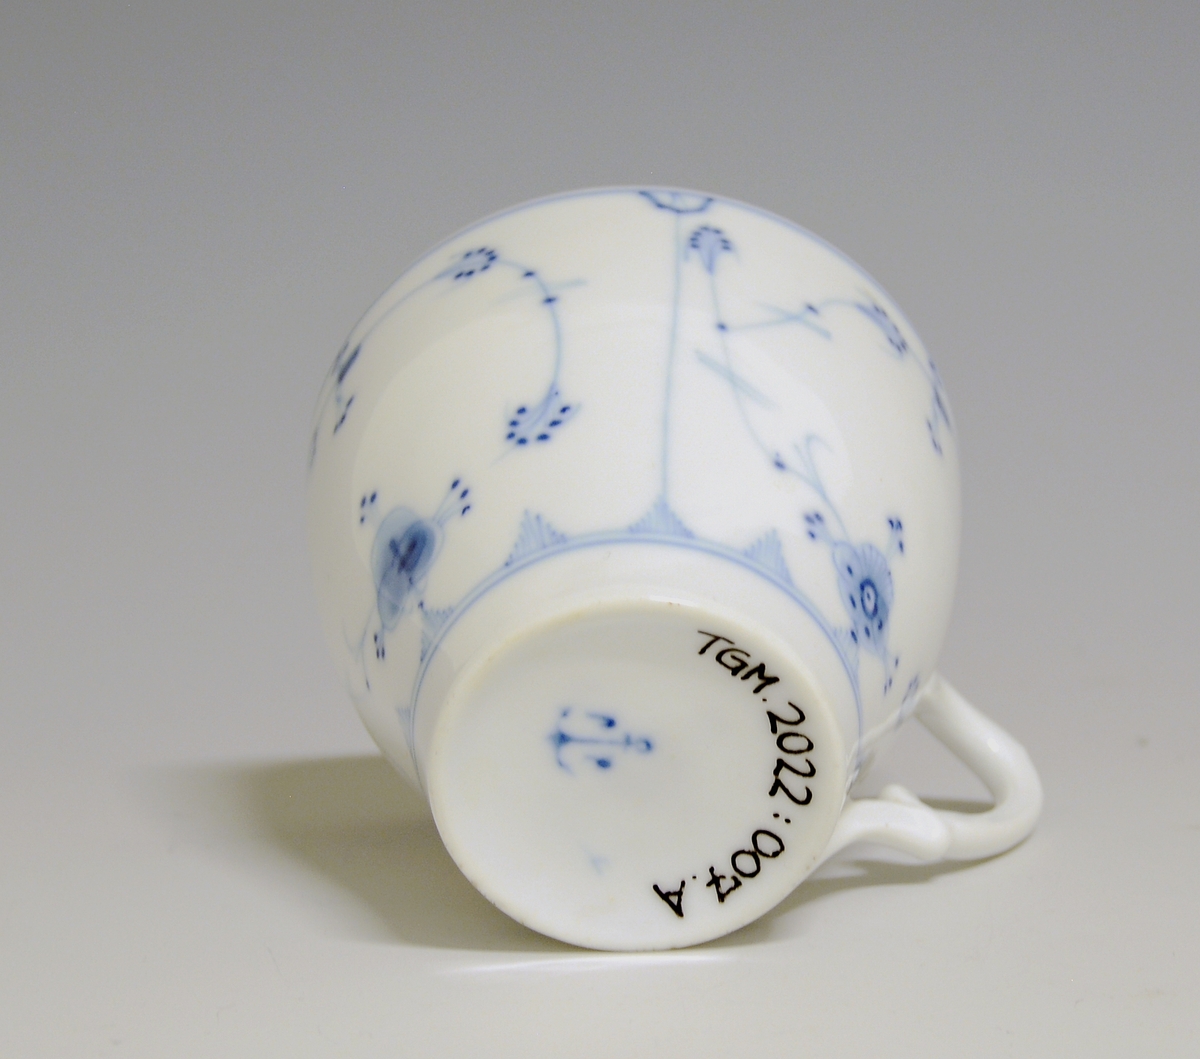 Kaffekopp av porselen med hvit glasur. Dekorert med stråmønster i blått.

Modellnr: 314.3, tilhører kaffe- og theservice 901.
Finnes i priskuranten for 1909